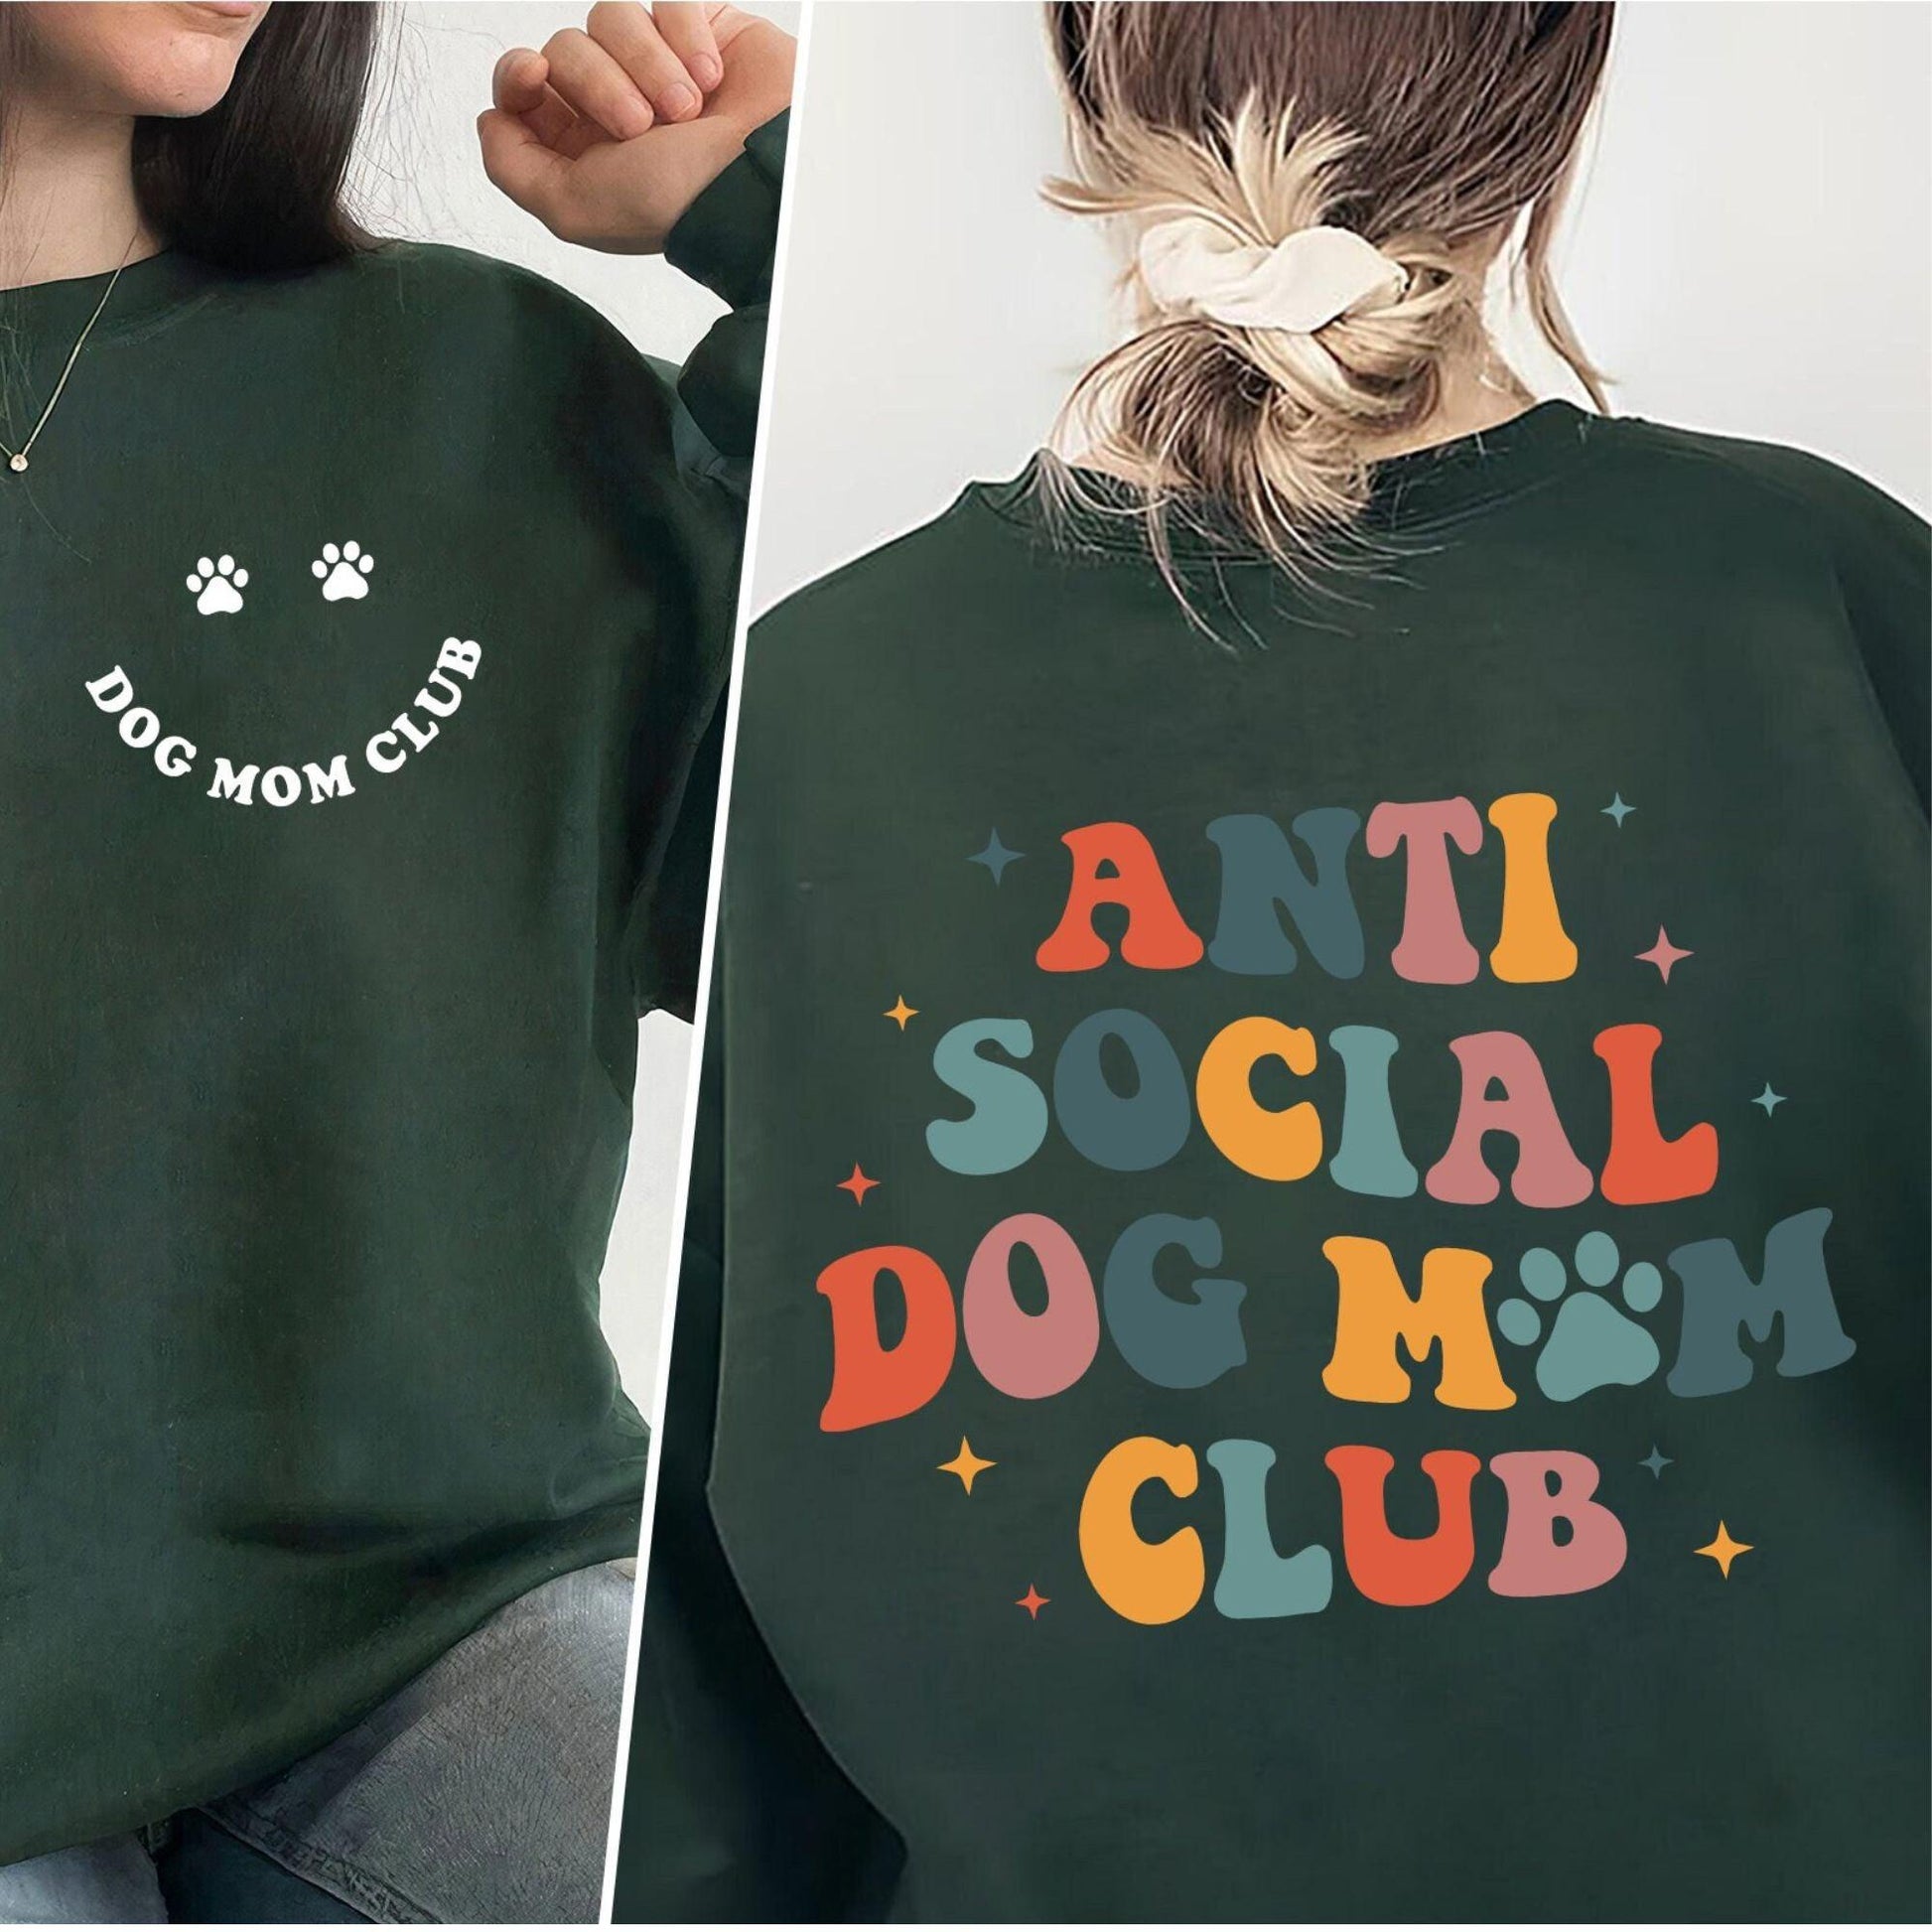 Anti Social Dog Mom Club - Dog Mom Sweatshirt - GiftHaus